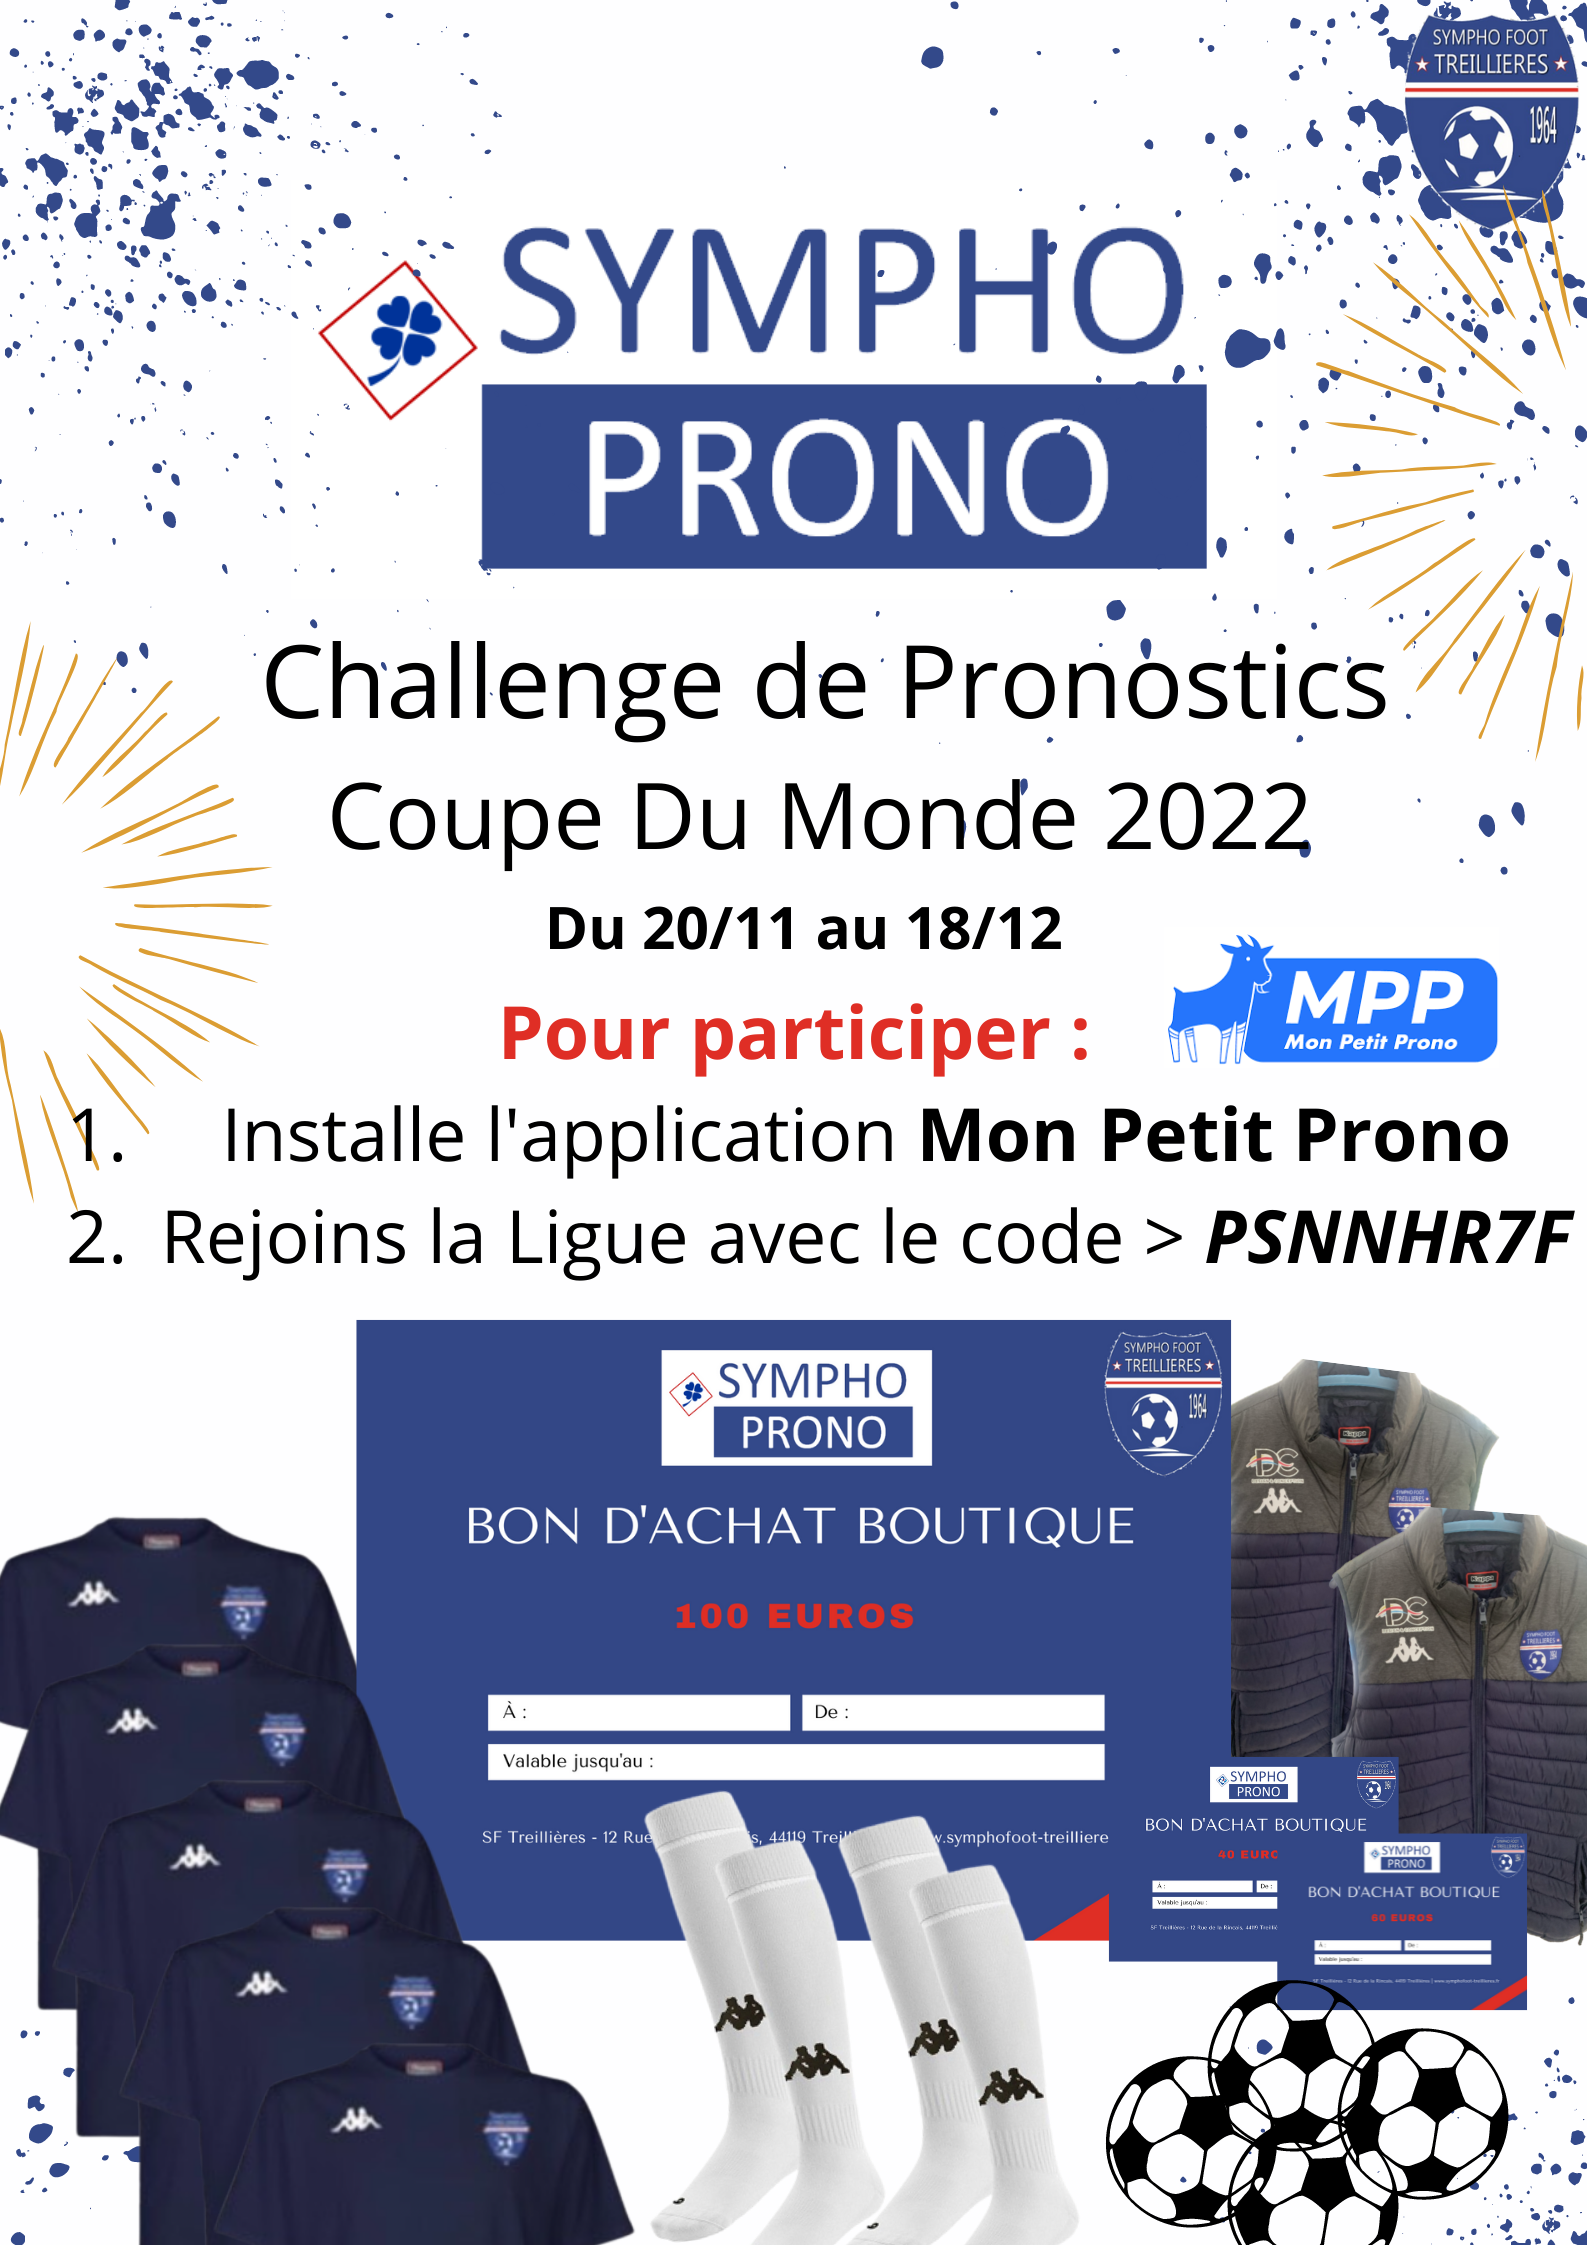 SymphoProno 2022 > Challenge Pronostics Coupe du Monde 2022